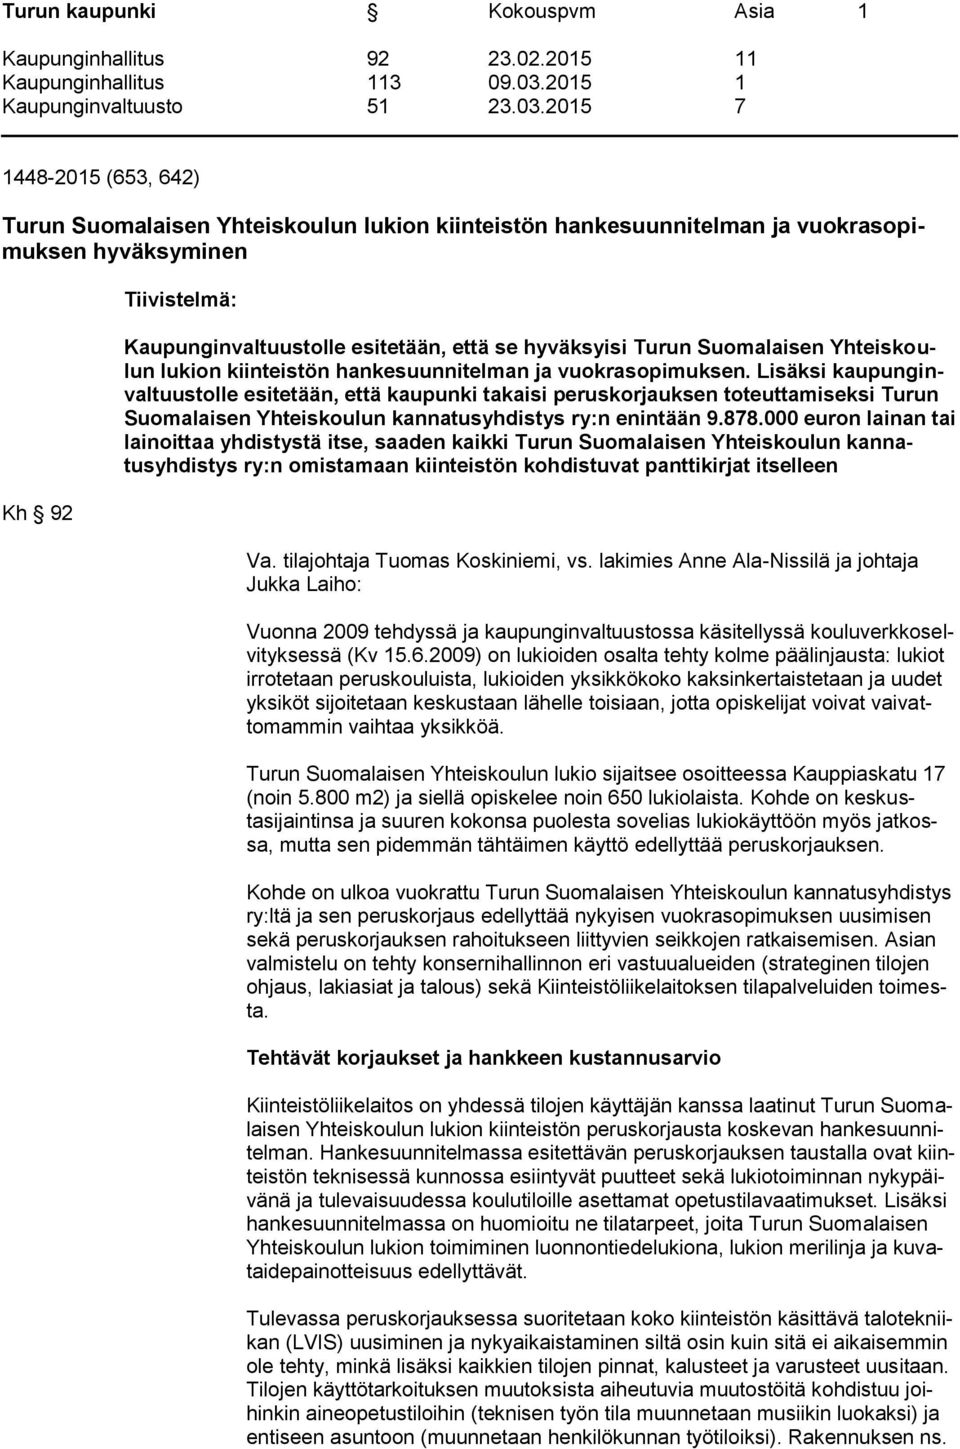 Lisäksi kaupunginvaltuustolle esitetään, että kaupunki takaisi peruskorjauksen toteuttamiseksi Turun Suomalaisen Yhteiskoulun kannatusyhdistys ry:n enintään 9.878.